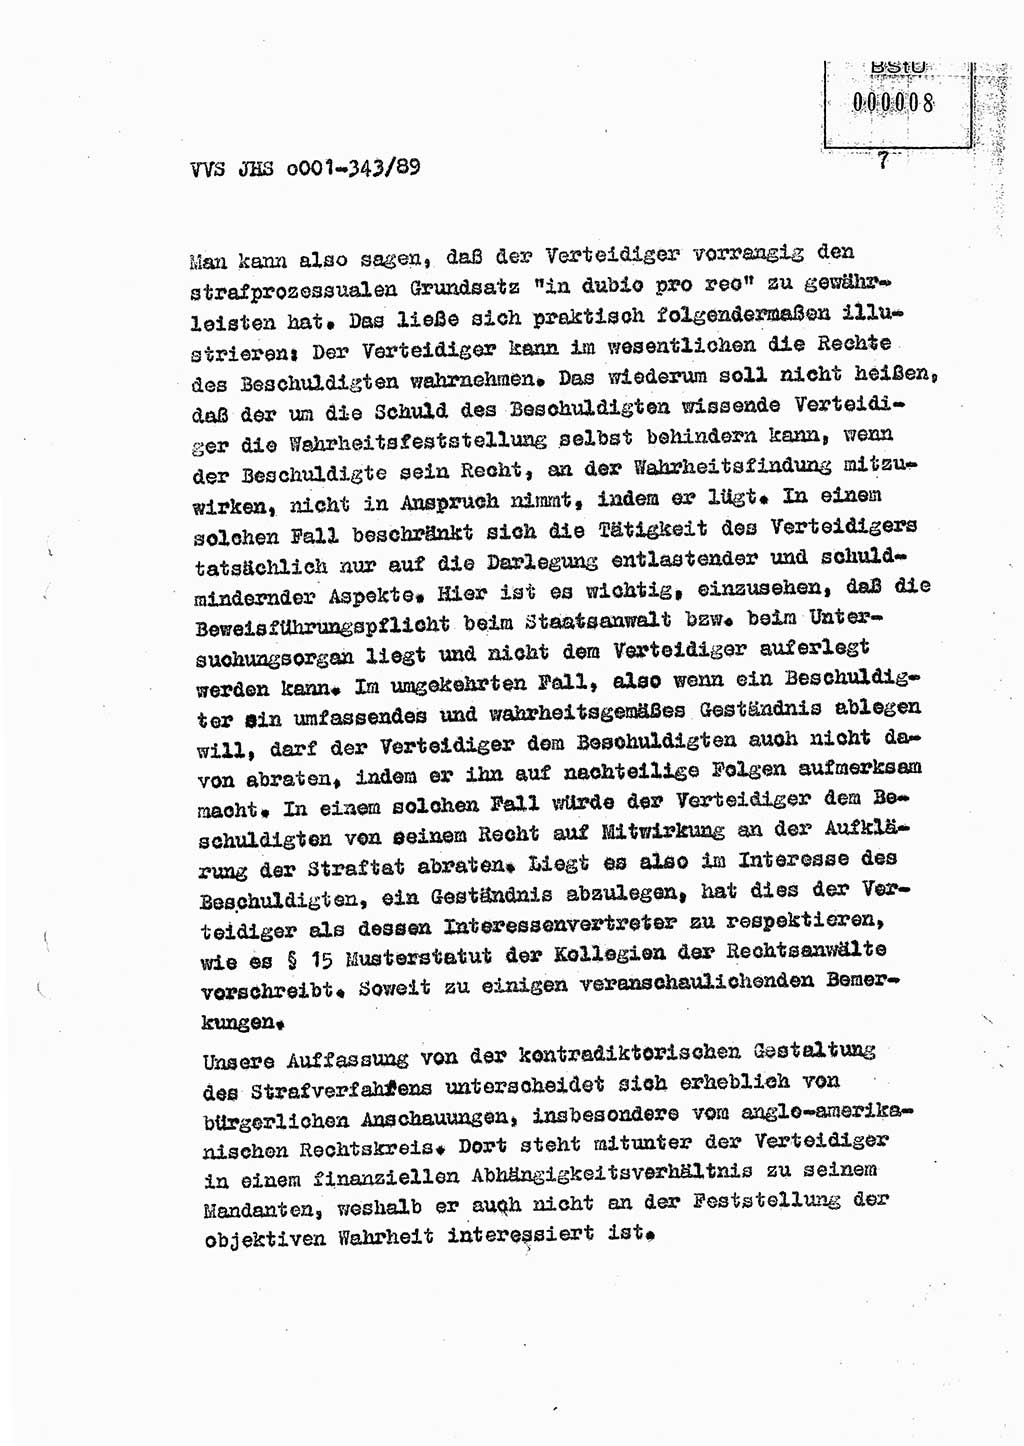 Diplomarbeit Offiziersschüler Axel Henschke (HA Ⅸ/9), Ministerium für Staatssicherheit (MfS) [Deutsche Demokratische Republik (DDR)], Juristische Hochschule (JHS), Vertrauliche Verschlußsache (VVS) o001-343/89, Potsdam 1989, Seite 7 (Dipl.-Arb. MfS DDR JHS VVS o001-343/89 1989, S. 7)